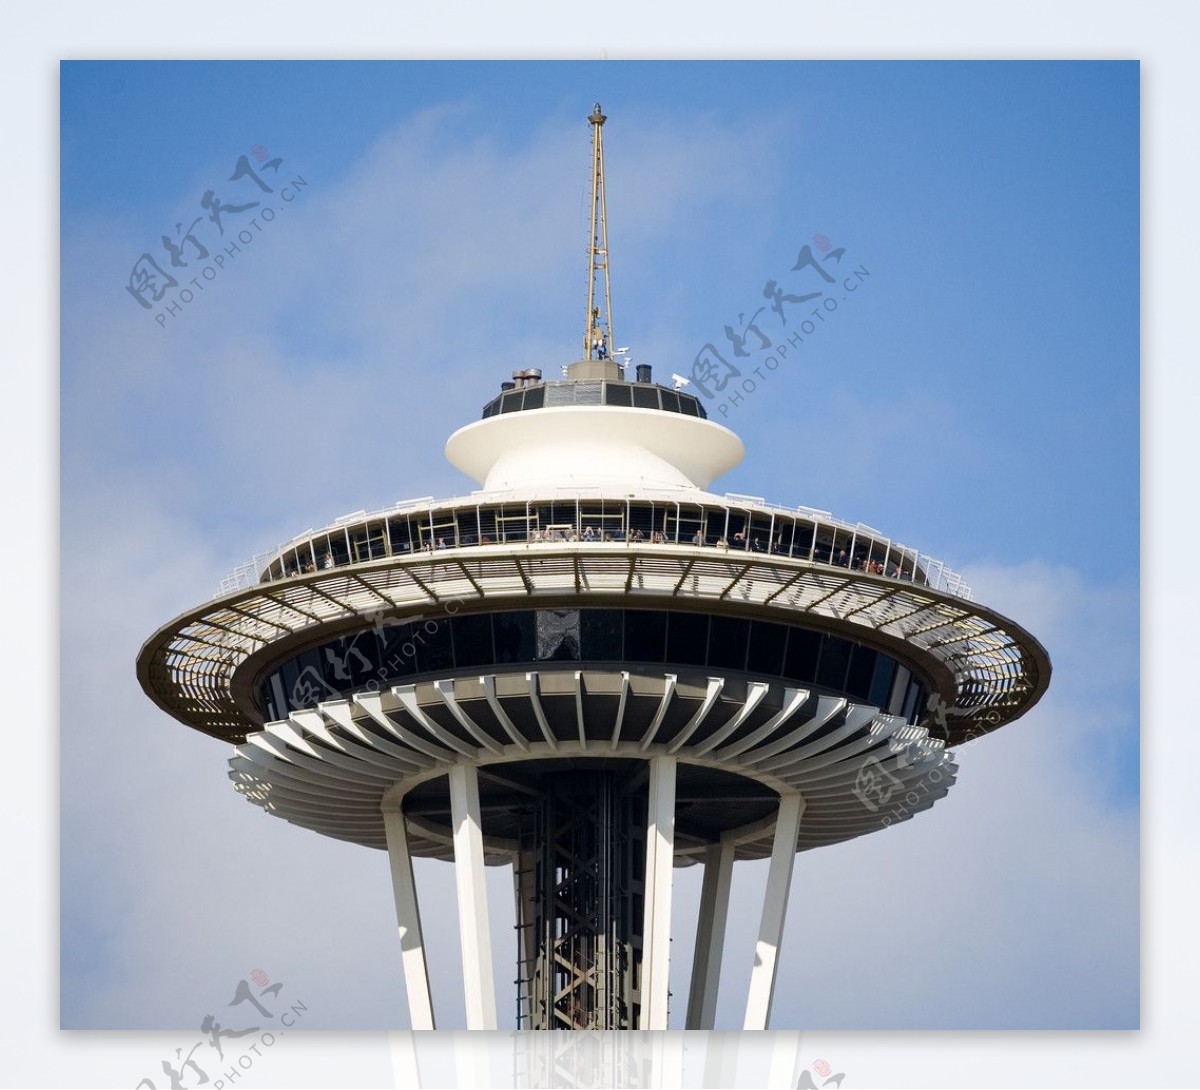 西雅图太空针塔顶部图片